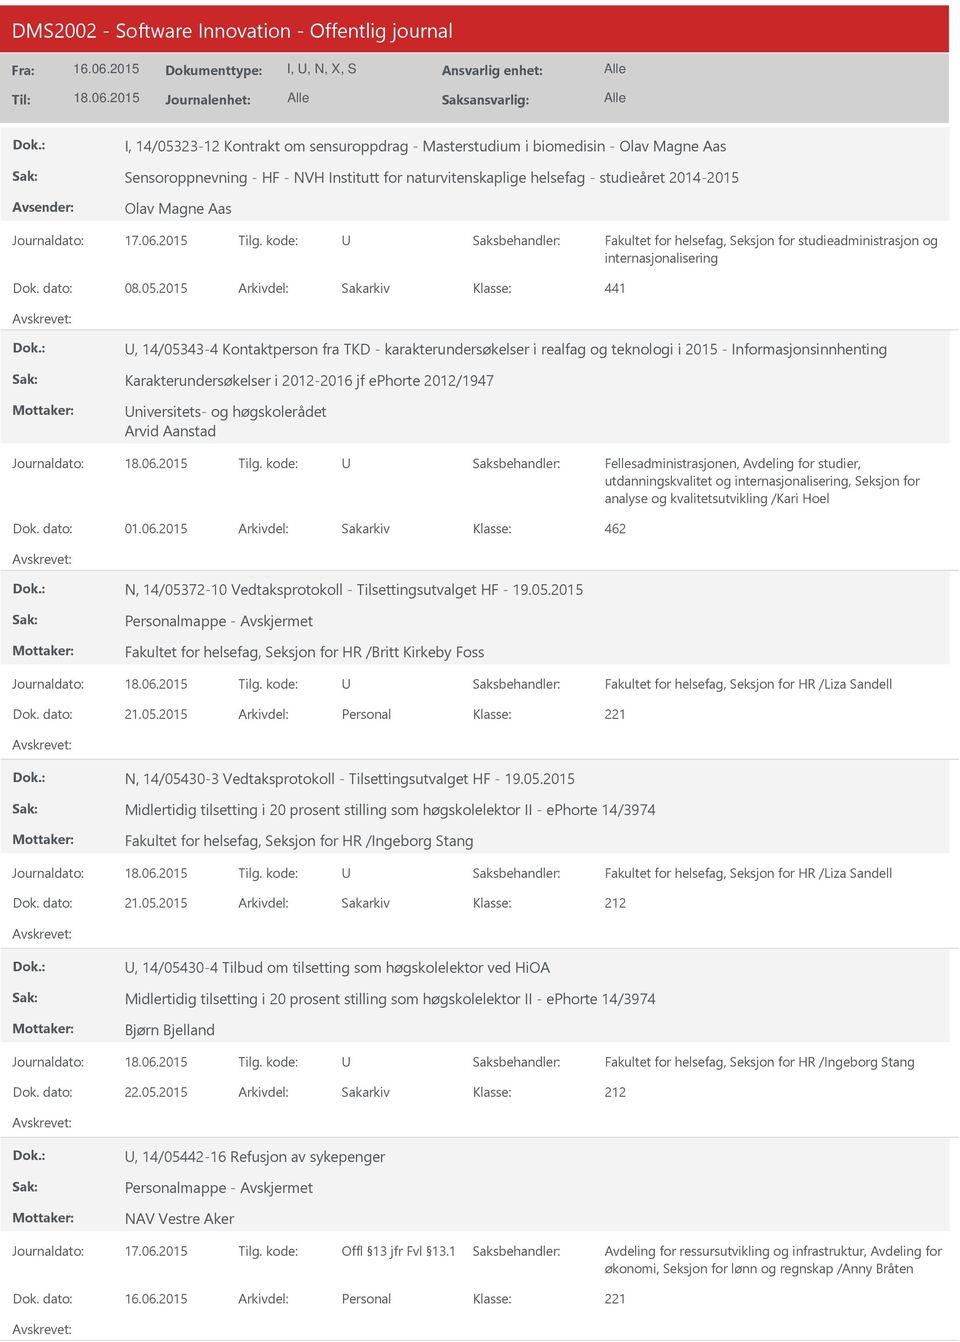 2015 Arkivdel: Sakarkiv 441, 14/05343-4 Kontaktperson fra TKD - karakterundersøkelser i realfag og teknologi i 2015 - Informasjonsinnhenting Karakterundersøkelser i 2012-2016 jf ephorte 2012/1947